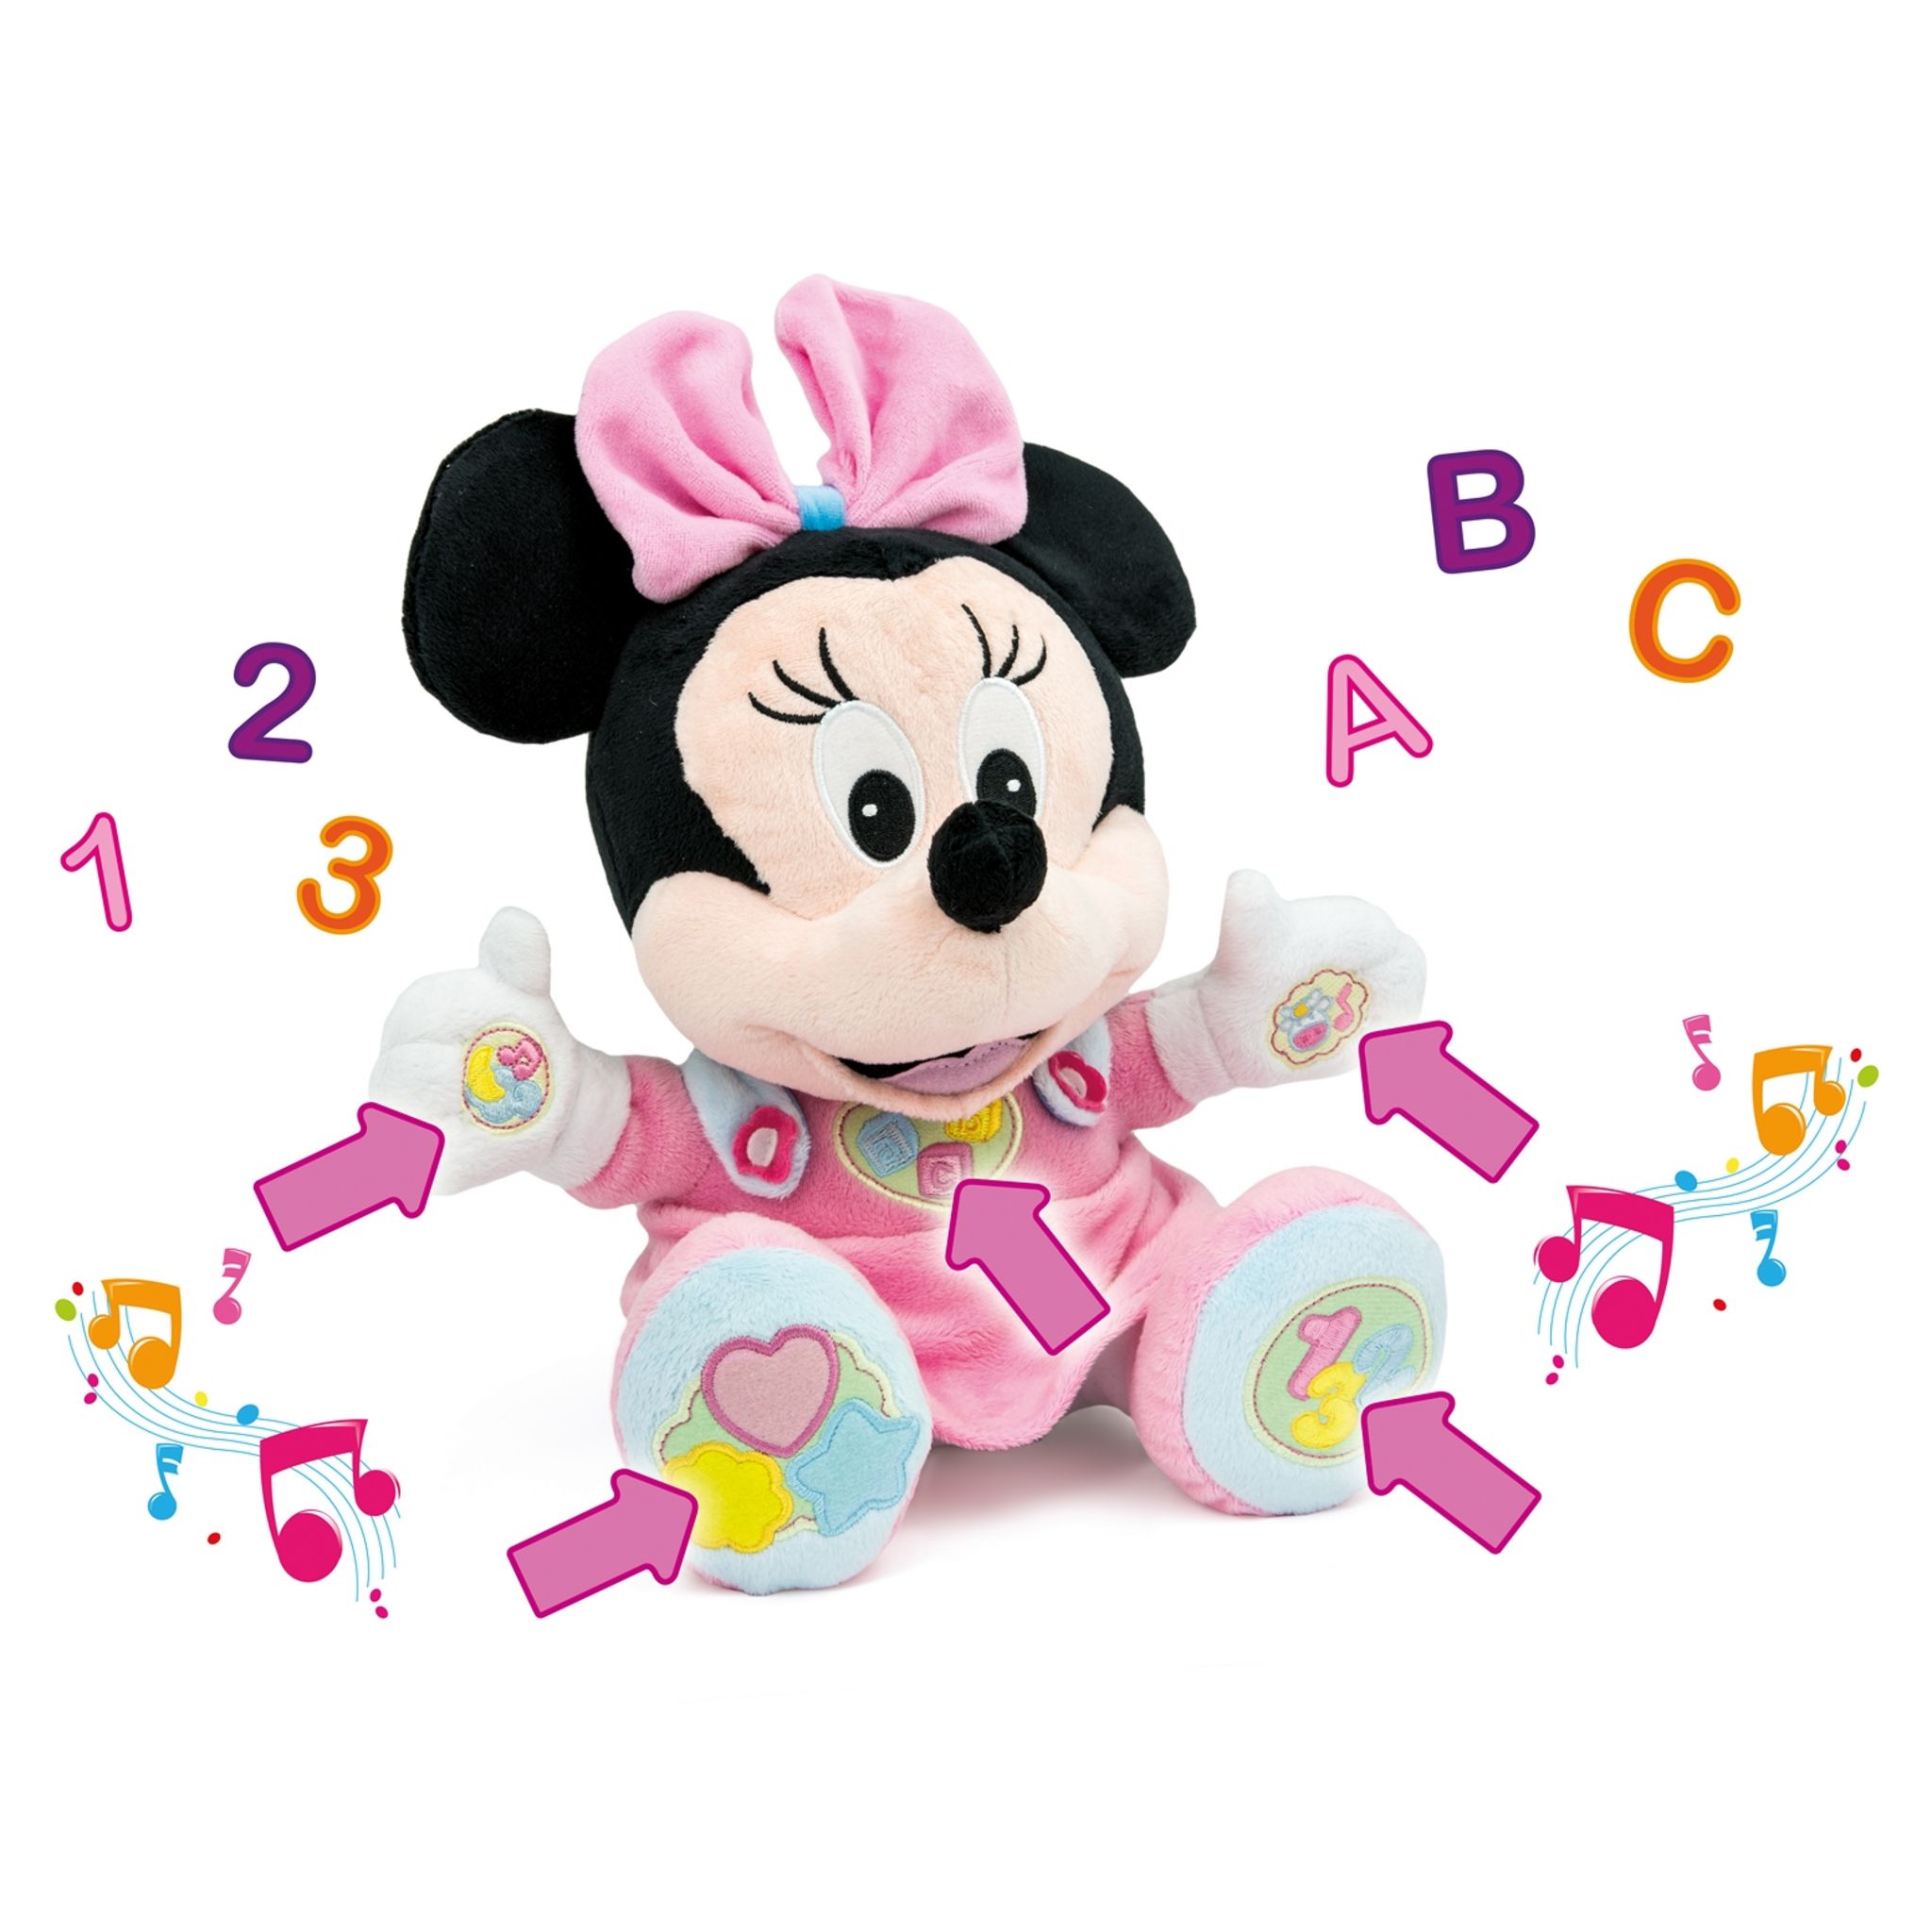 CLEMENTONI Peluche Baby Minnie Interactive dès 6 mois pas cher - Auchan.fr